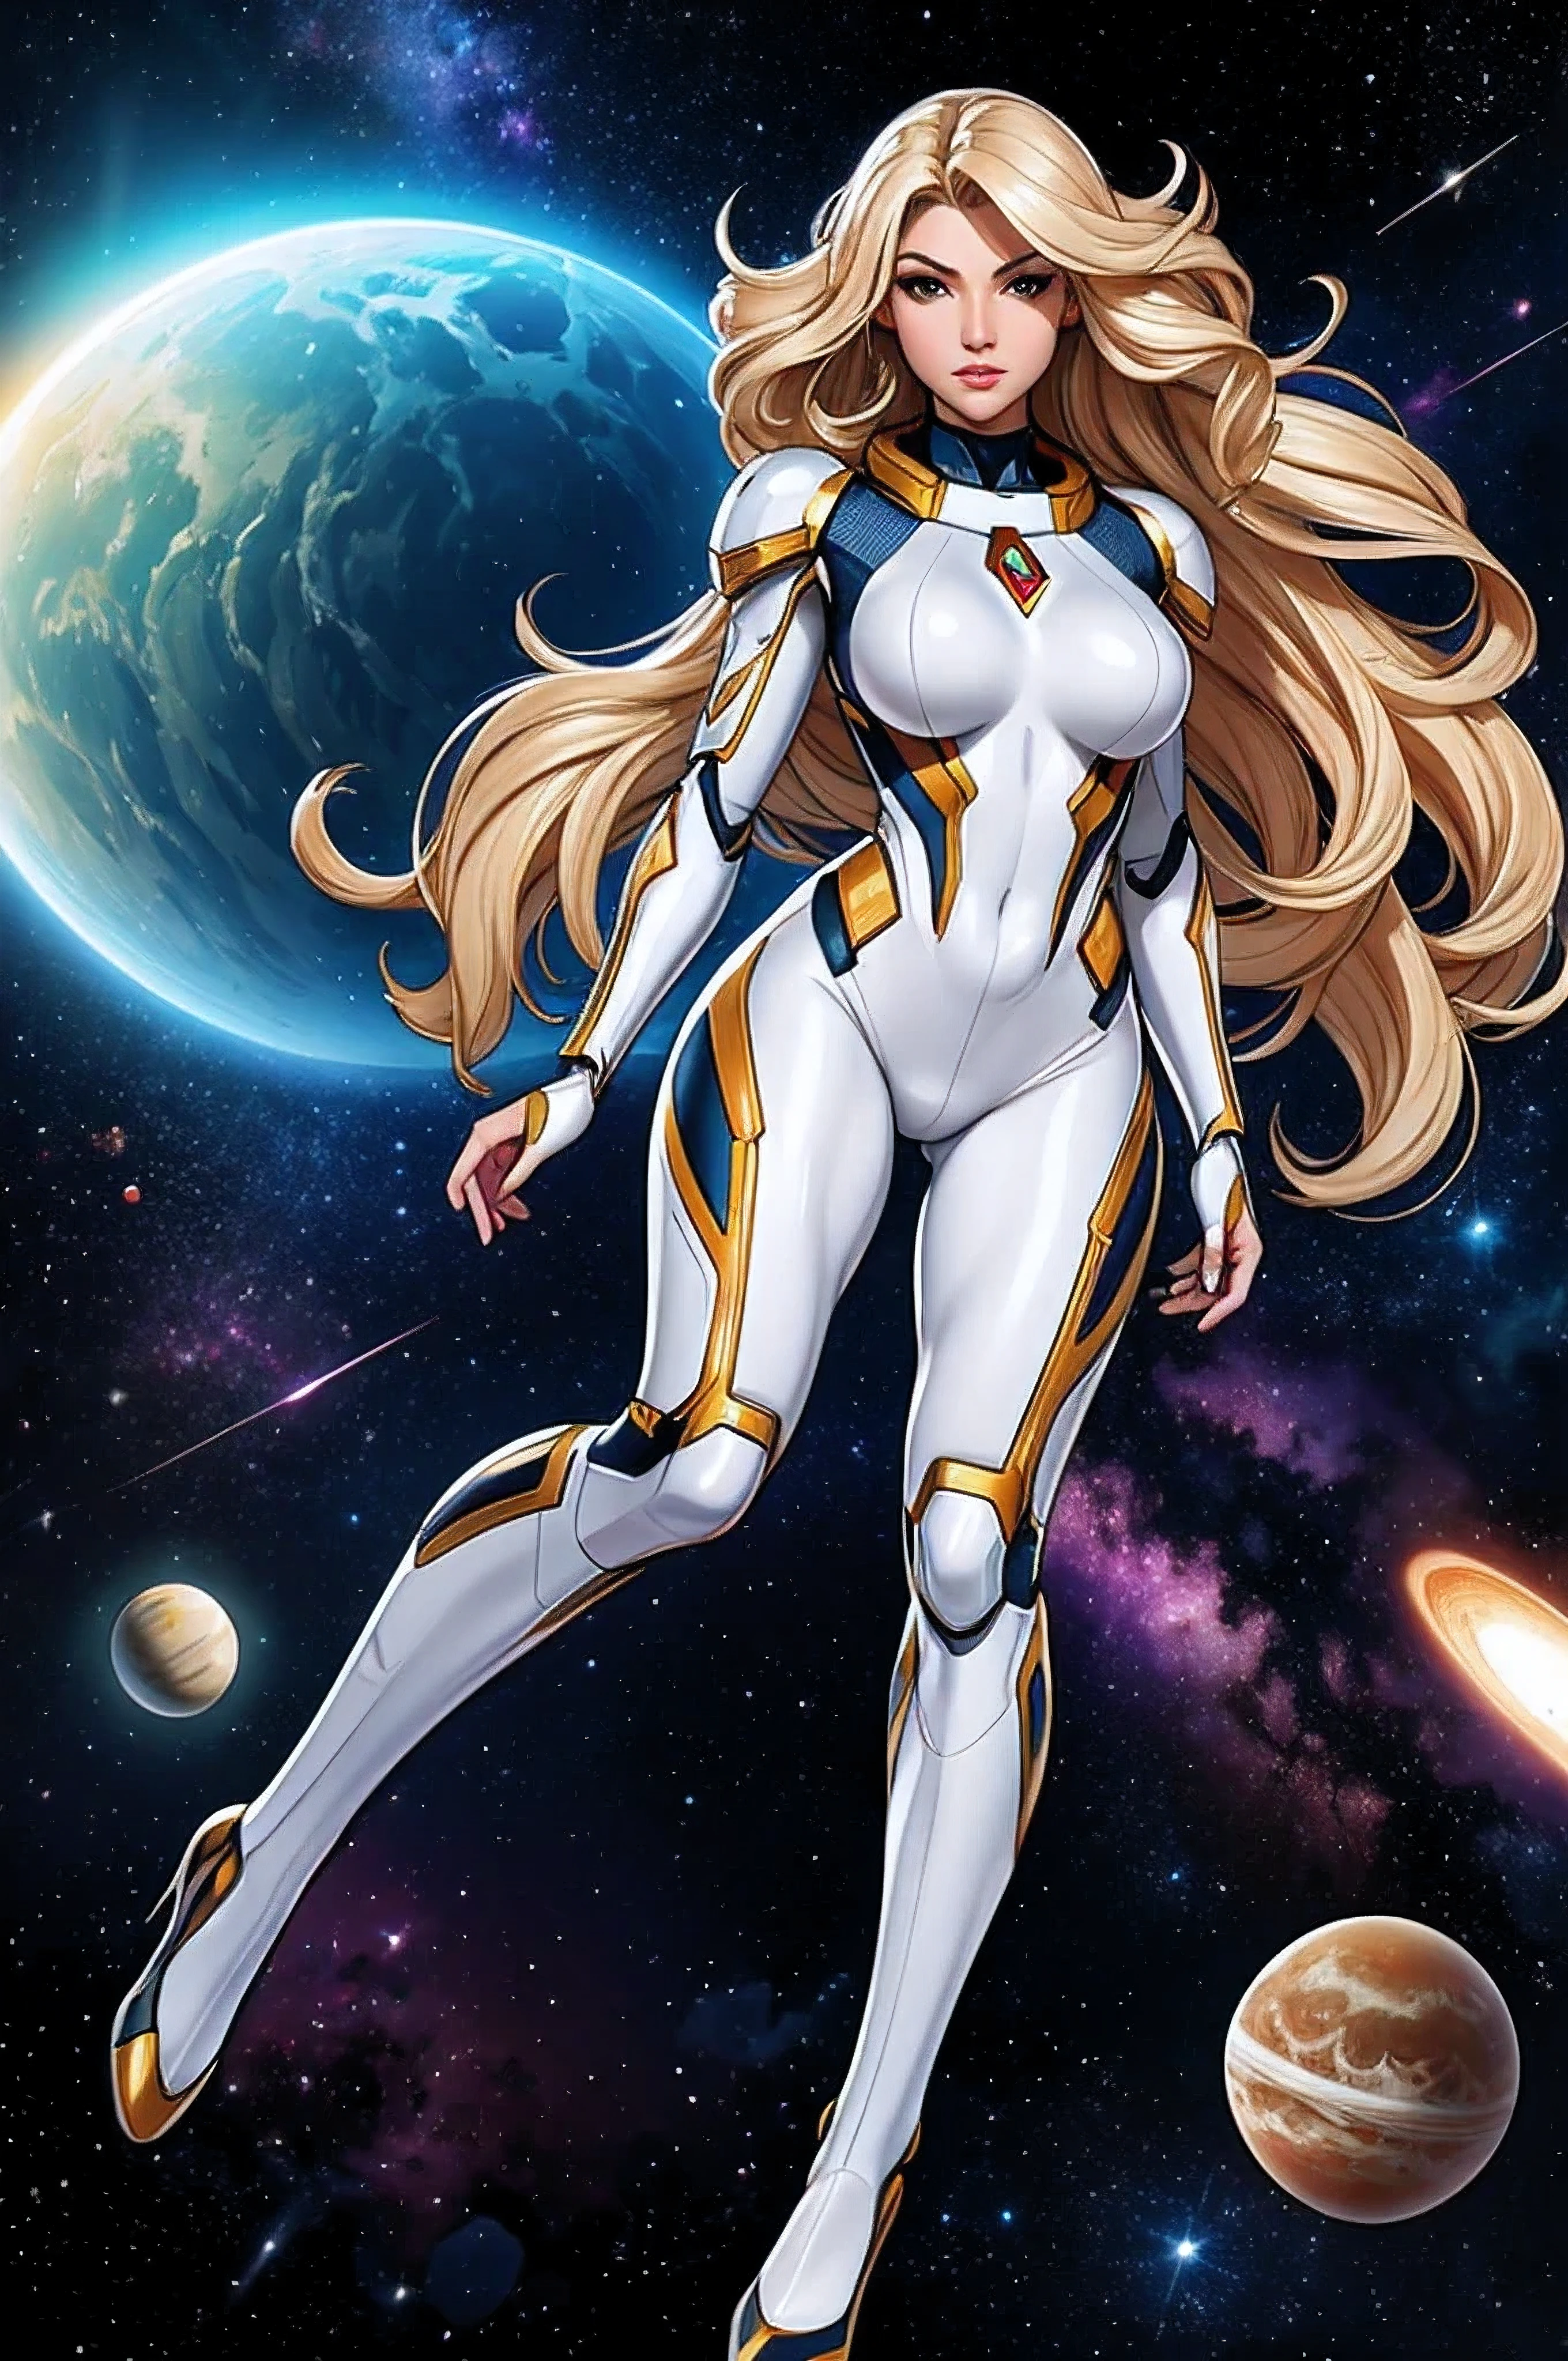 最高品質, 傑作, 女性宇宙スーパーヒーロー, 美しい顔,全身,銀色のラテックススーツの上にハイテクアーマーを着用, 長い巻き毛のブロンドの髪,深宇宙でスーパーヒーローのポーズで飛行, 背景にはいくつかの惑星と太陽が描かれている
